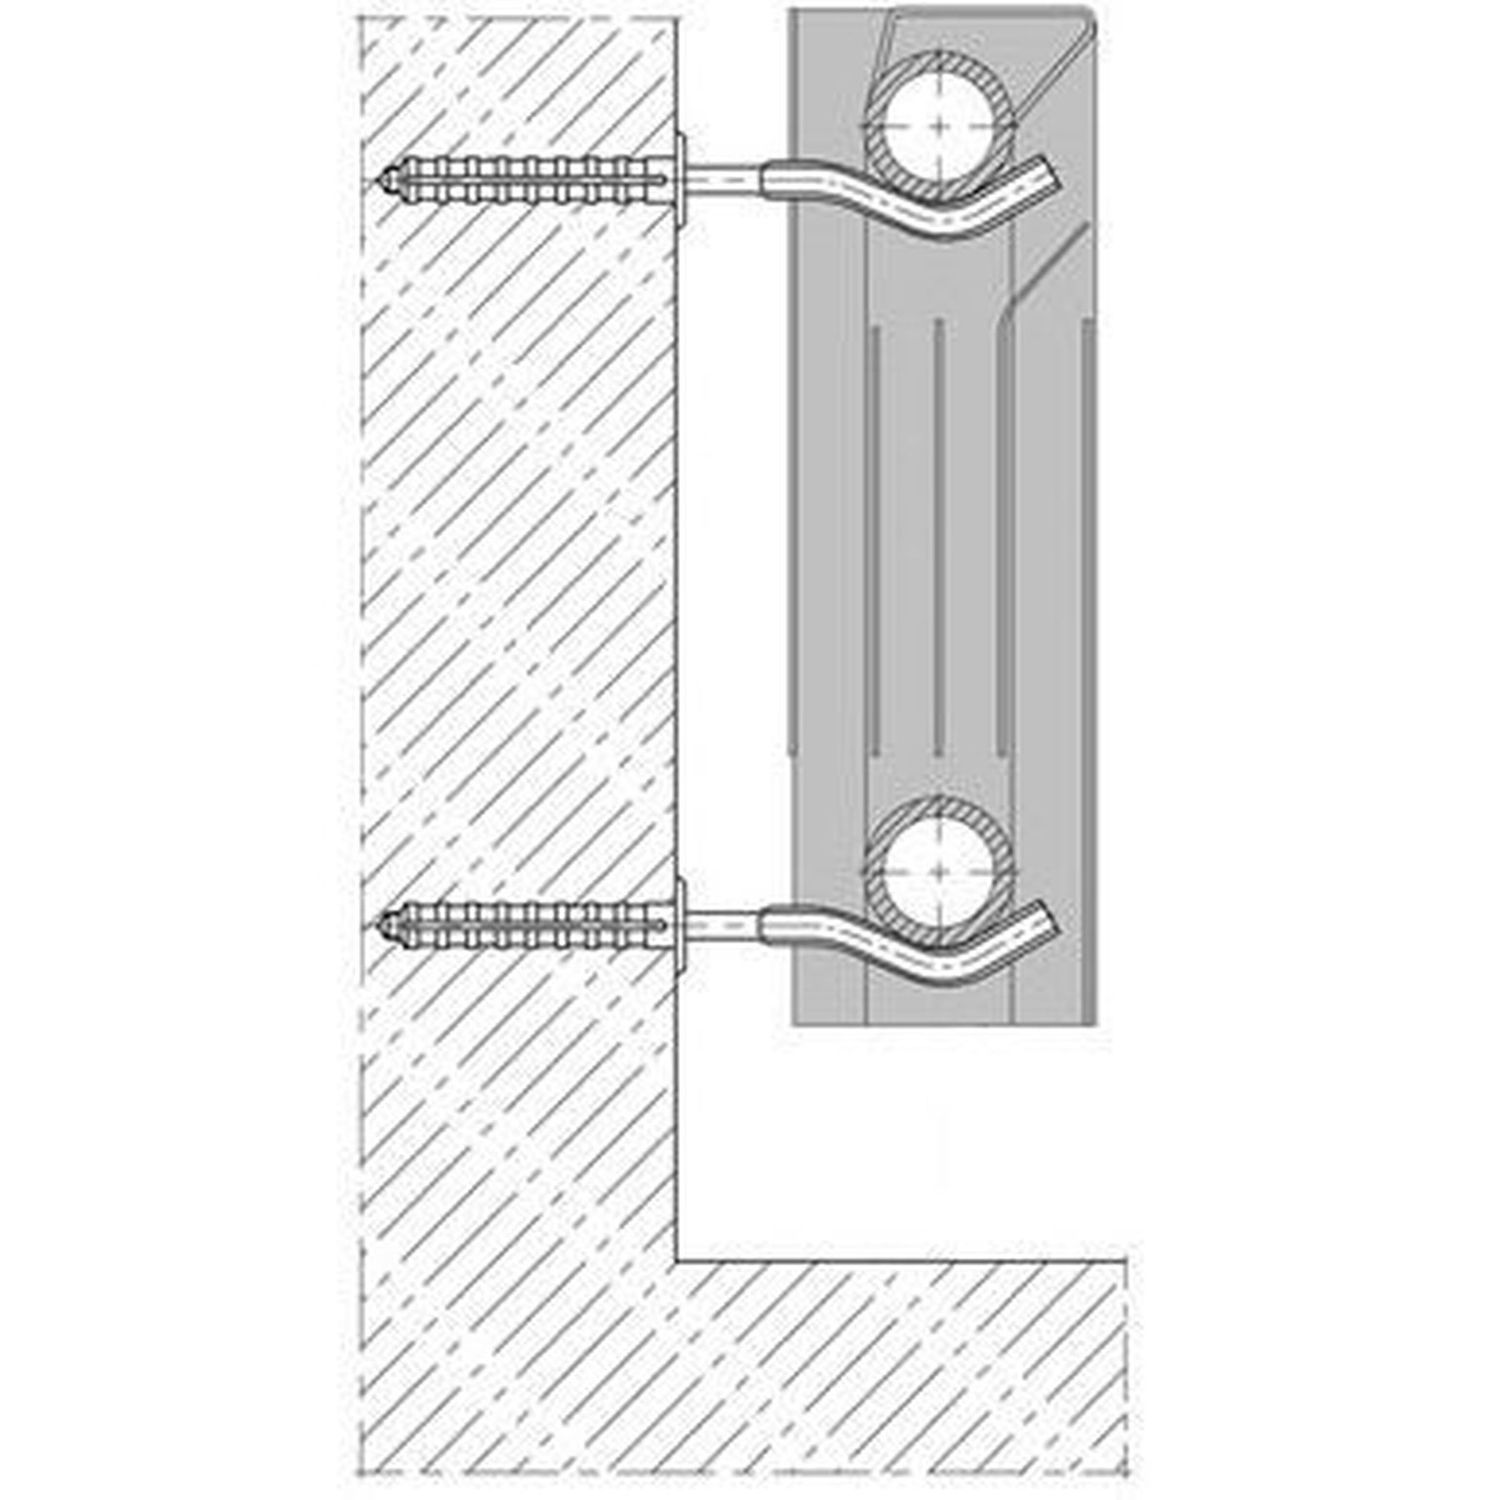 Комплект кронштейнов радиатора CRISTAL NR-1015 штырьковый прорезиненный с дюбелем Ø9х170мм (пара -4 единицы)